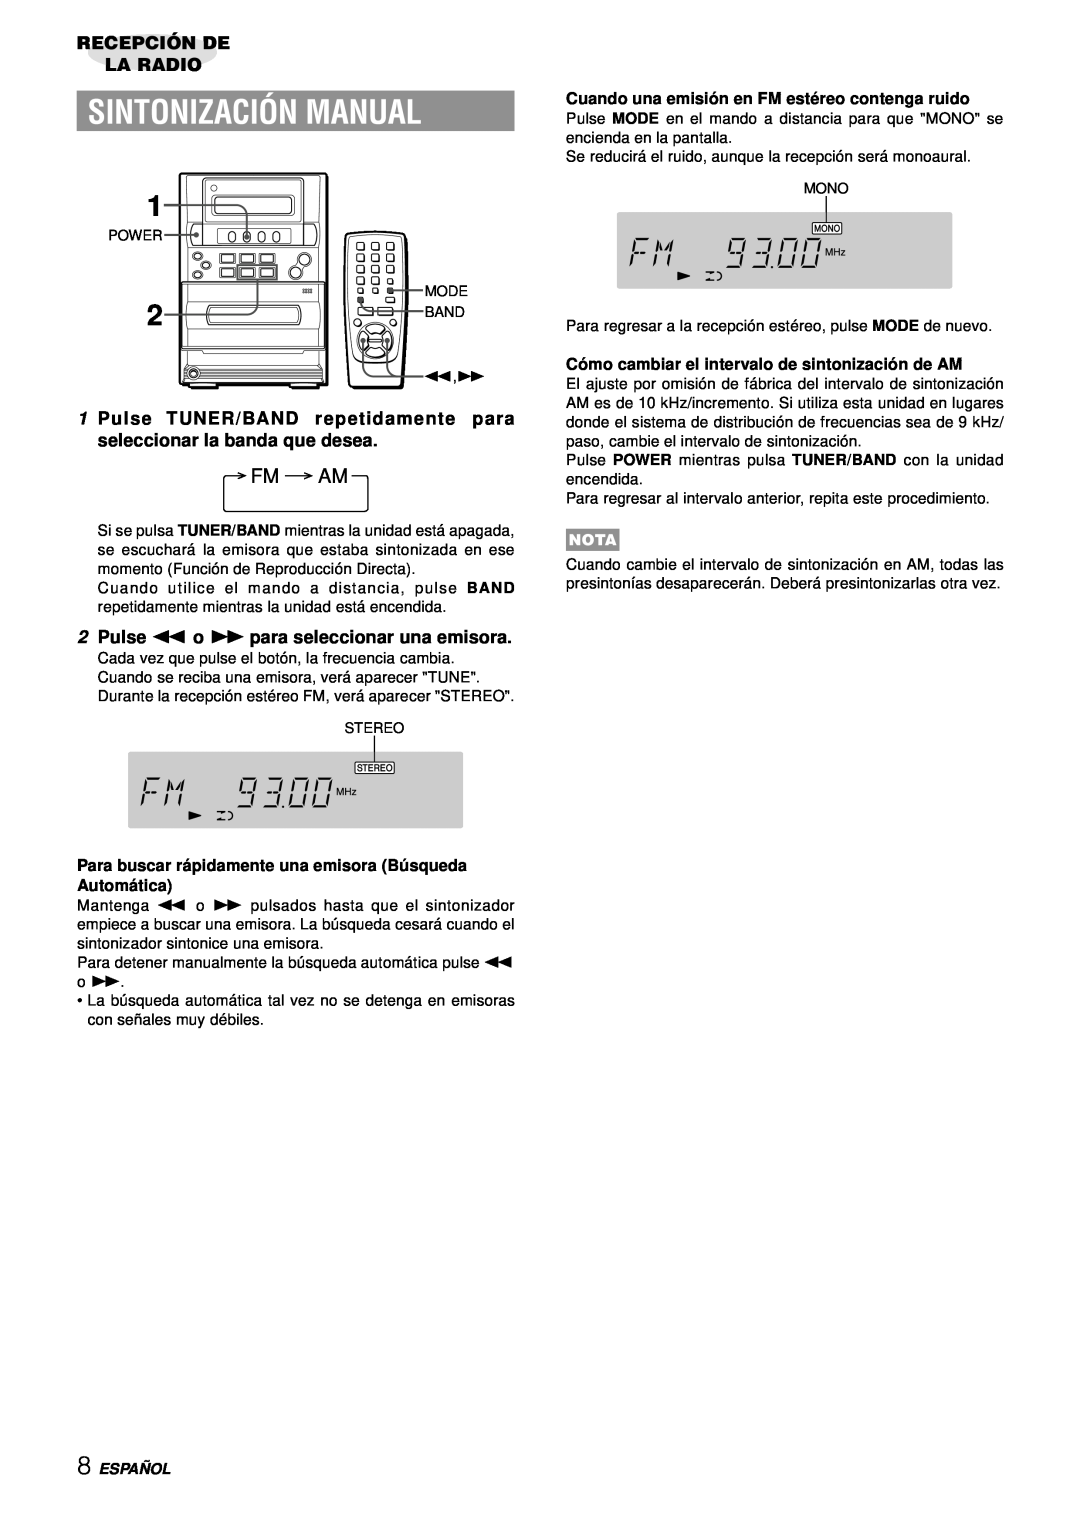 Aiwa LCX-357 Sintonización Manual, Recepción De La Radio, 2Pulse f o g para seleccionar una emisora, Españ Ol, Fm Am, Nota 